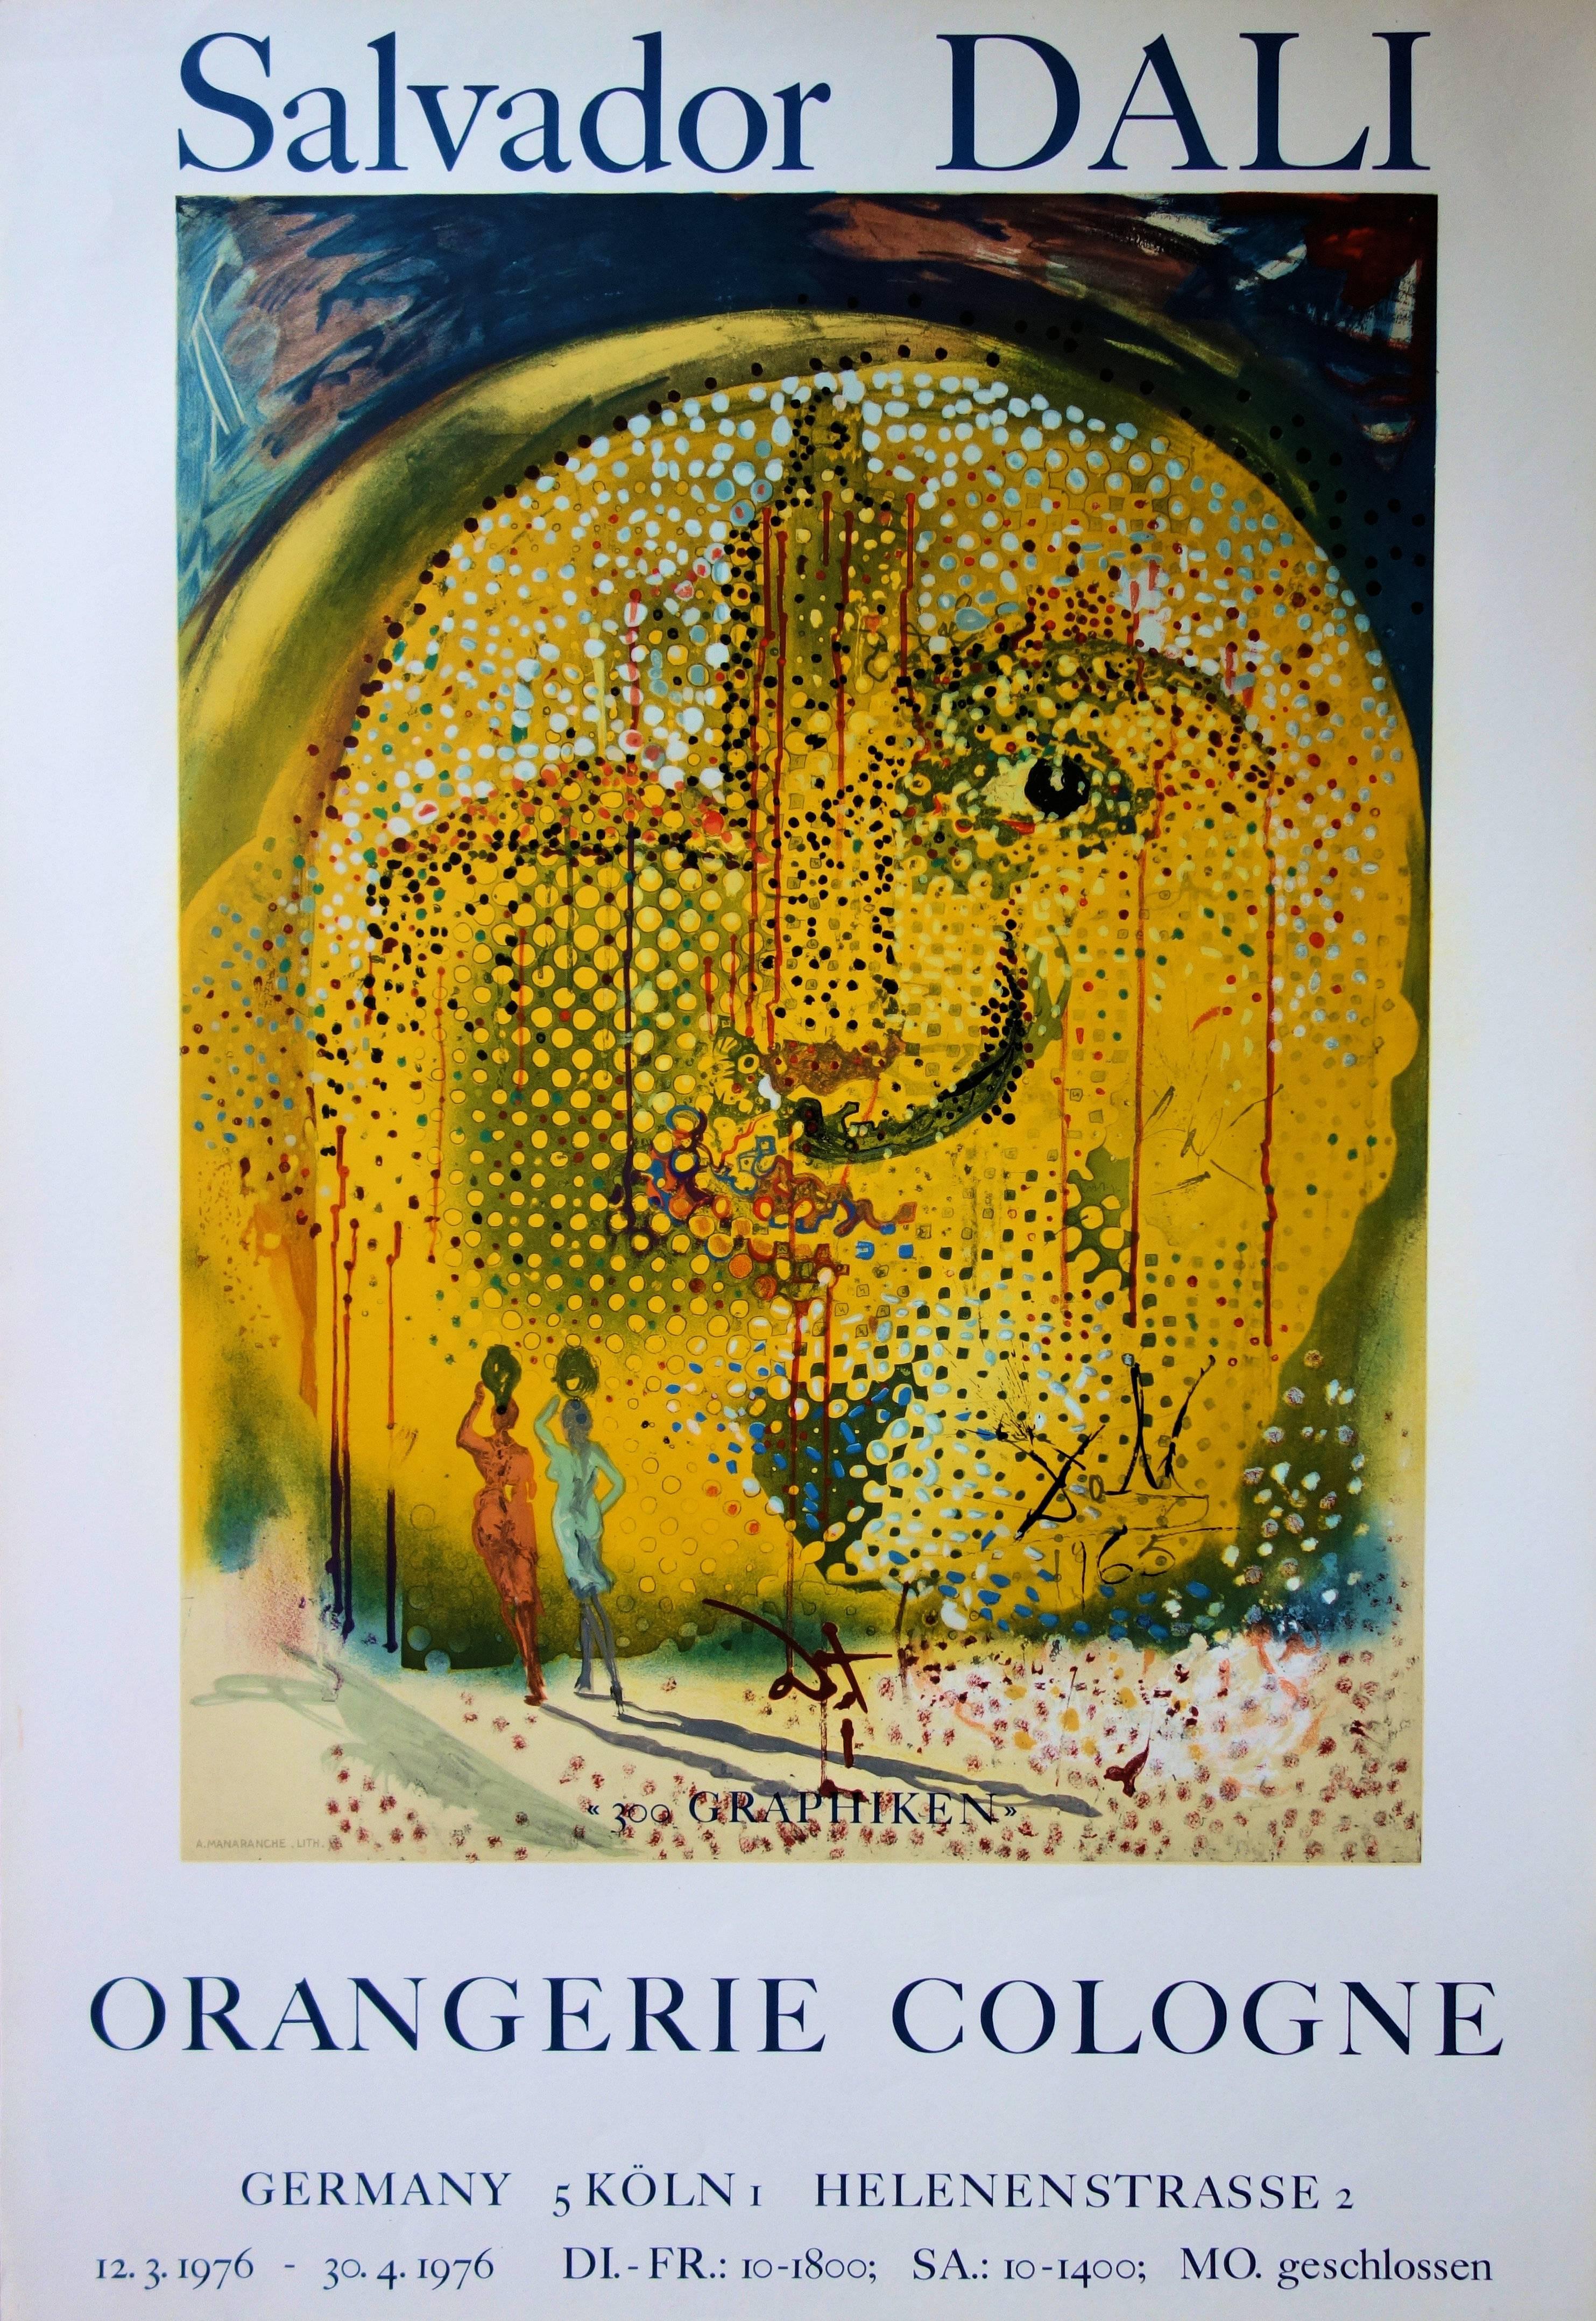 Figurative Print (after) Salvador Dali - Rare affiche lithographique vintage rare de Sol y Dali, Mourlot 1967 (feuille n° 67-1)